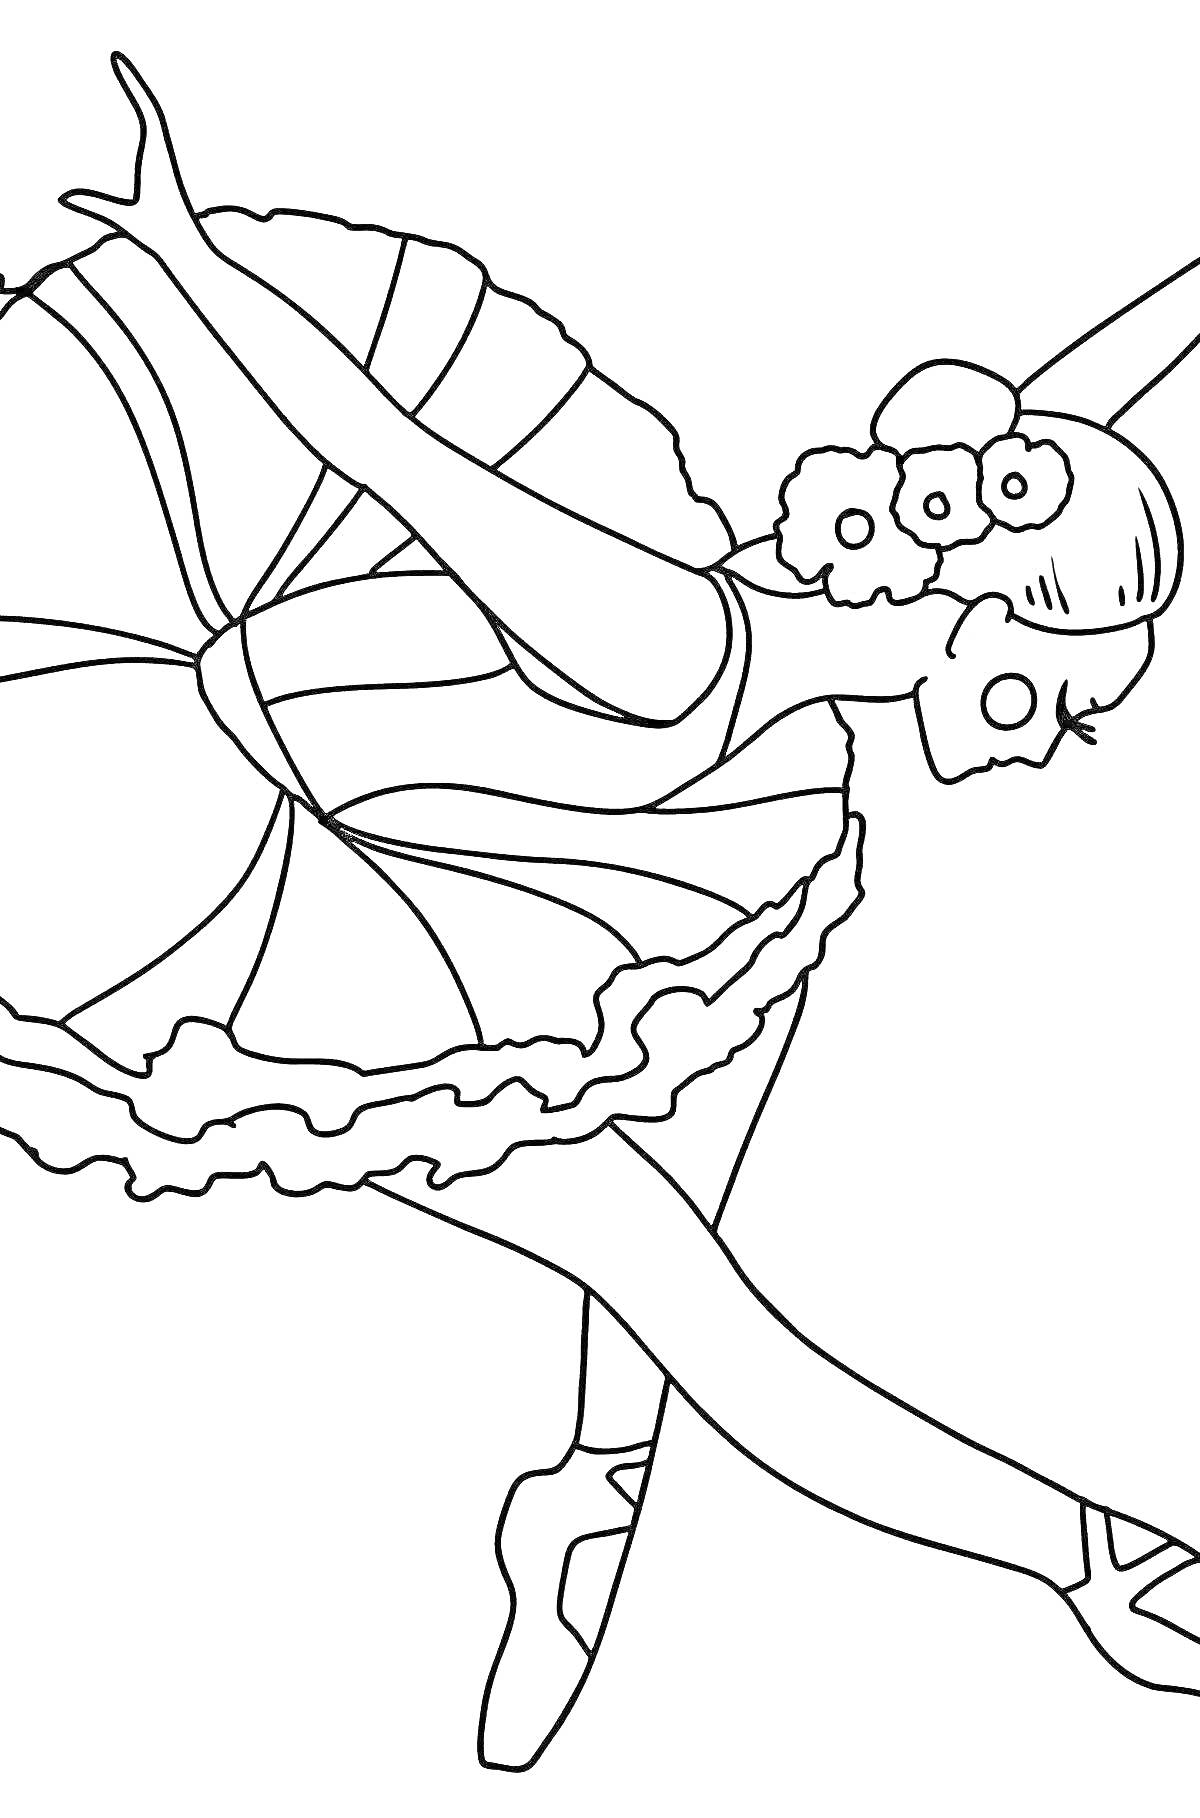 Раскраска Балерина с цветами в балетной пачке с ушками и хвостиком зайчика